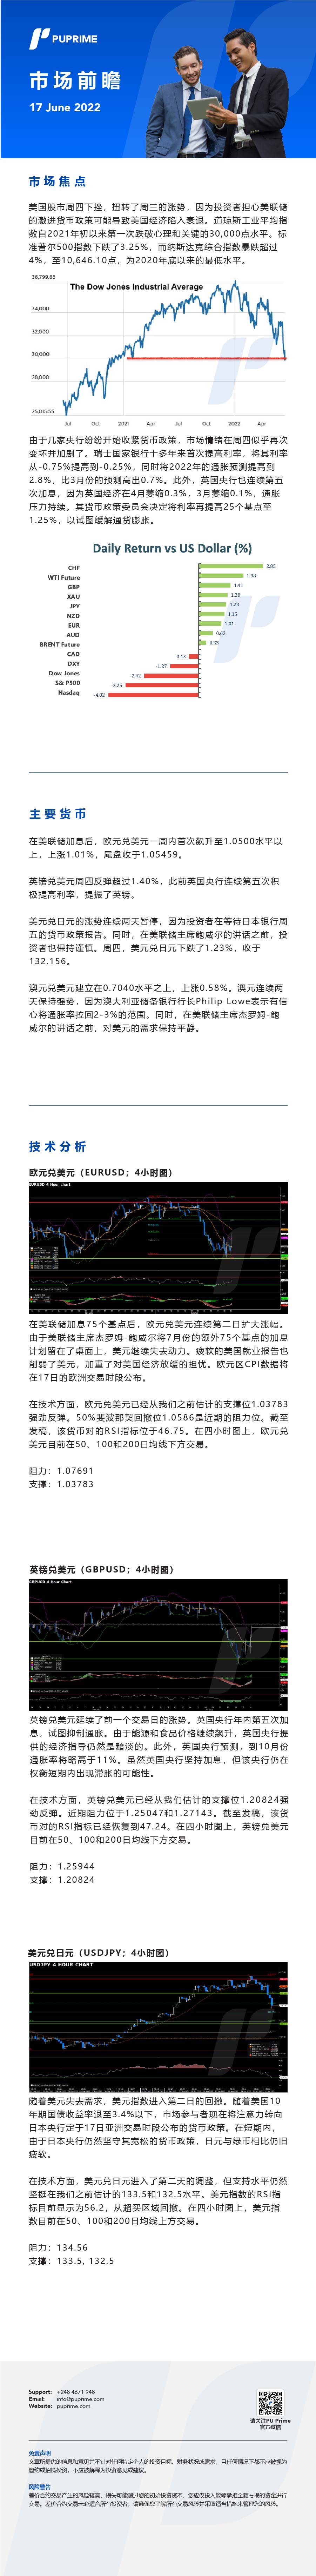 17062022 Daily Market Analysis__CHN.jpg